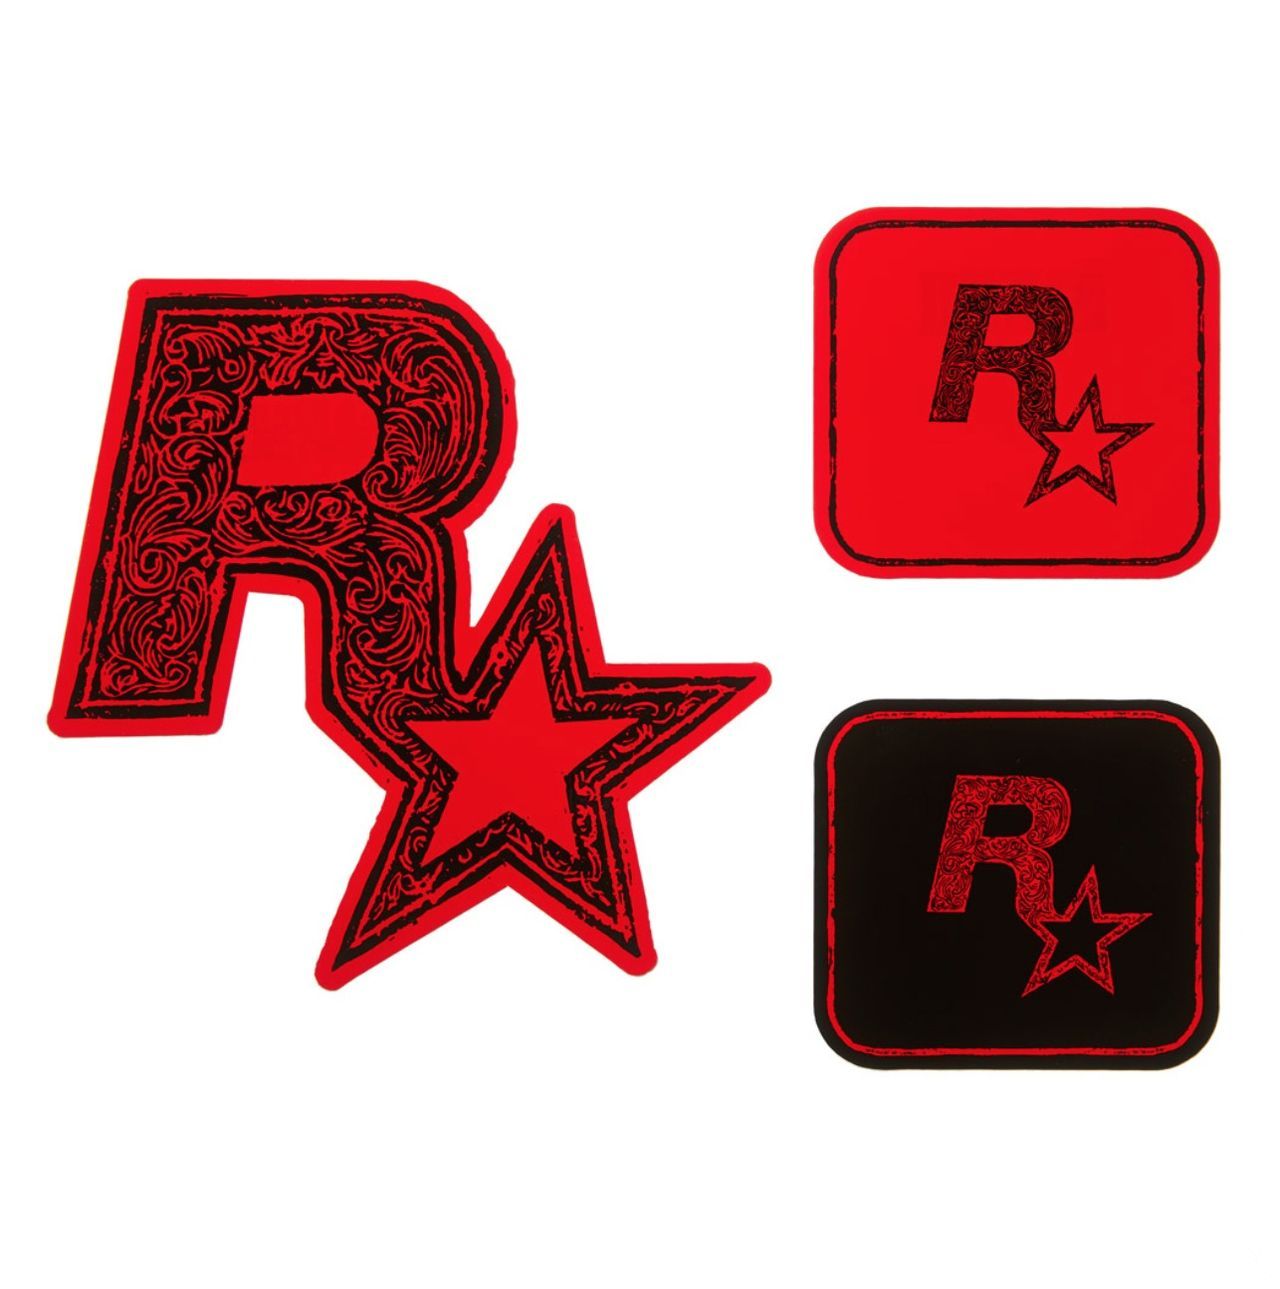 Red Dead Redemption 2 presenta su colección de merchandising limitado